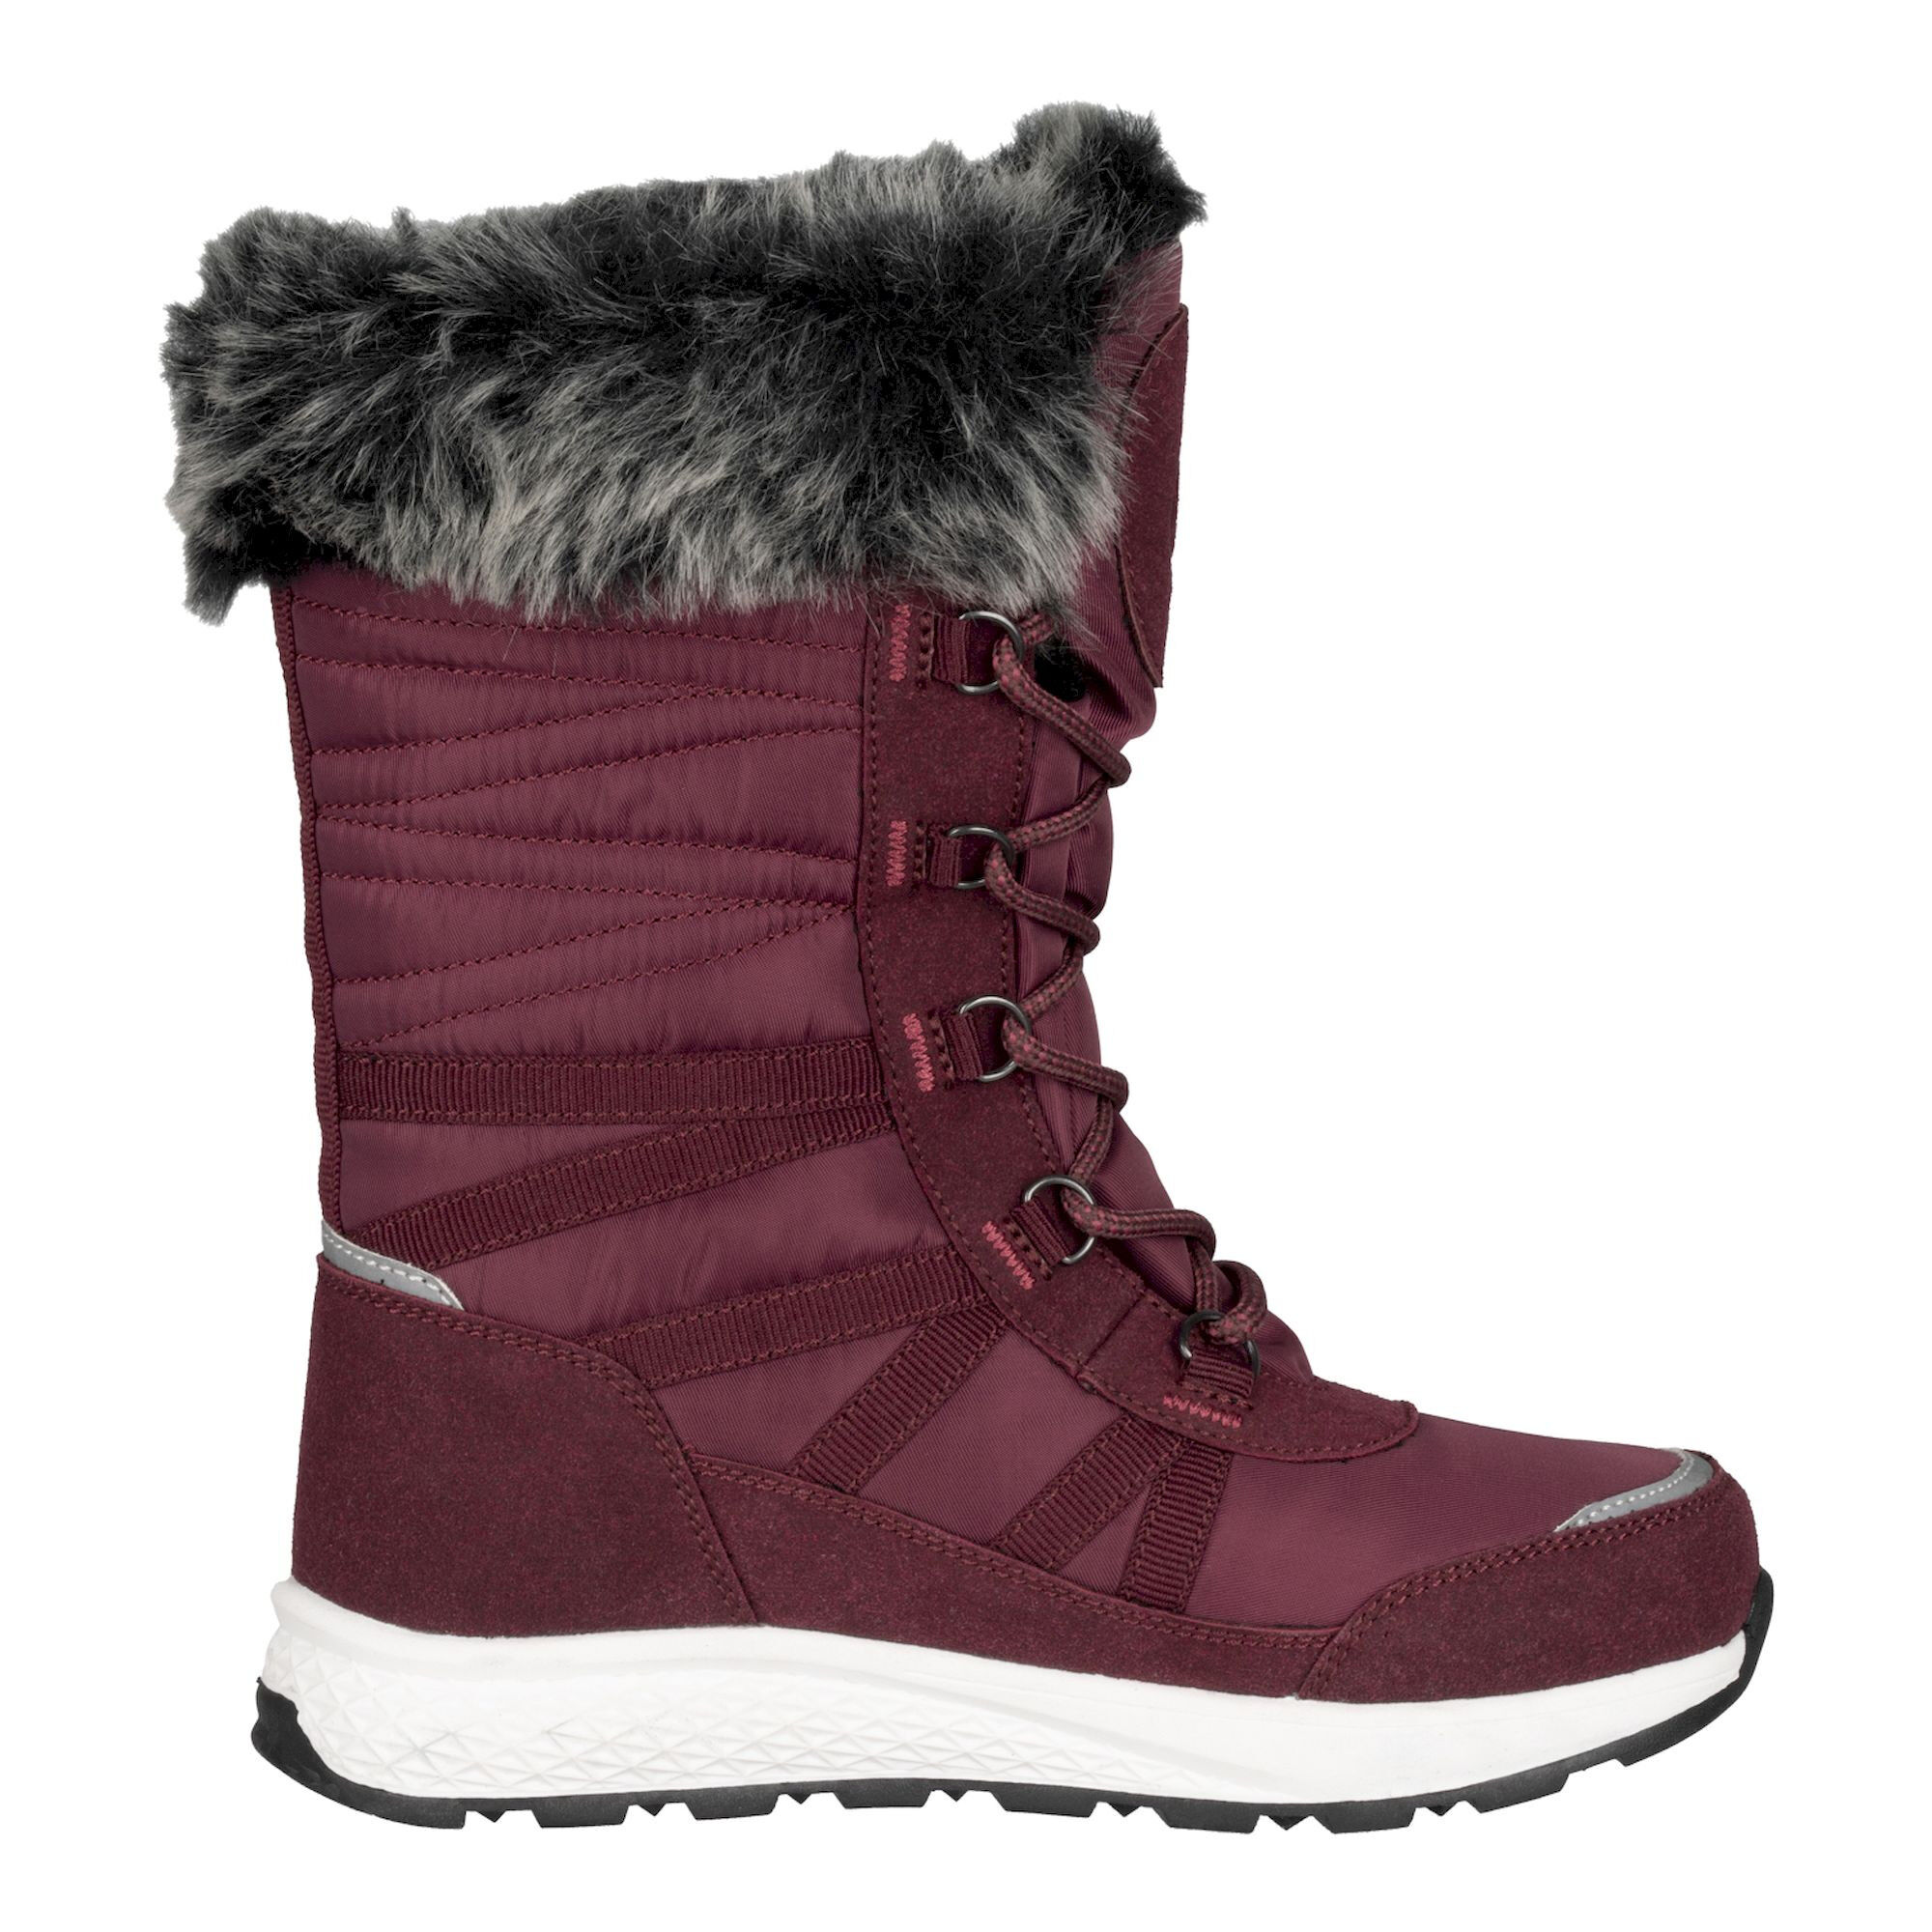 Trollkids Hemsedal Winter Boots XT - Bottes de neige enfant | Hardloop